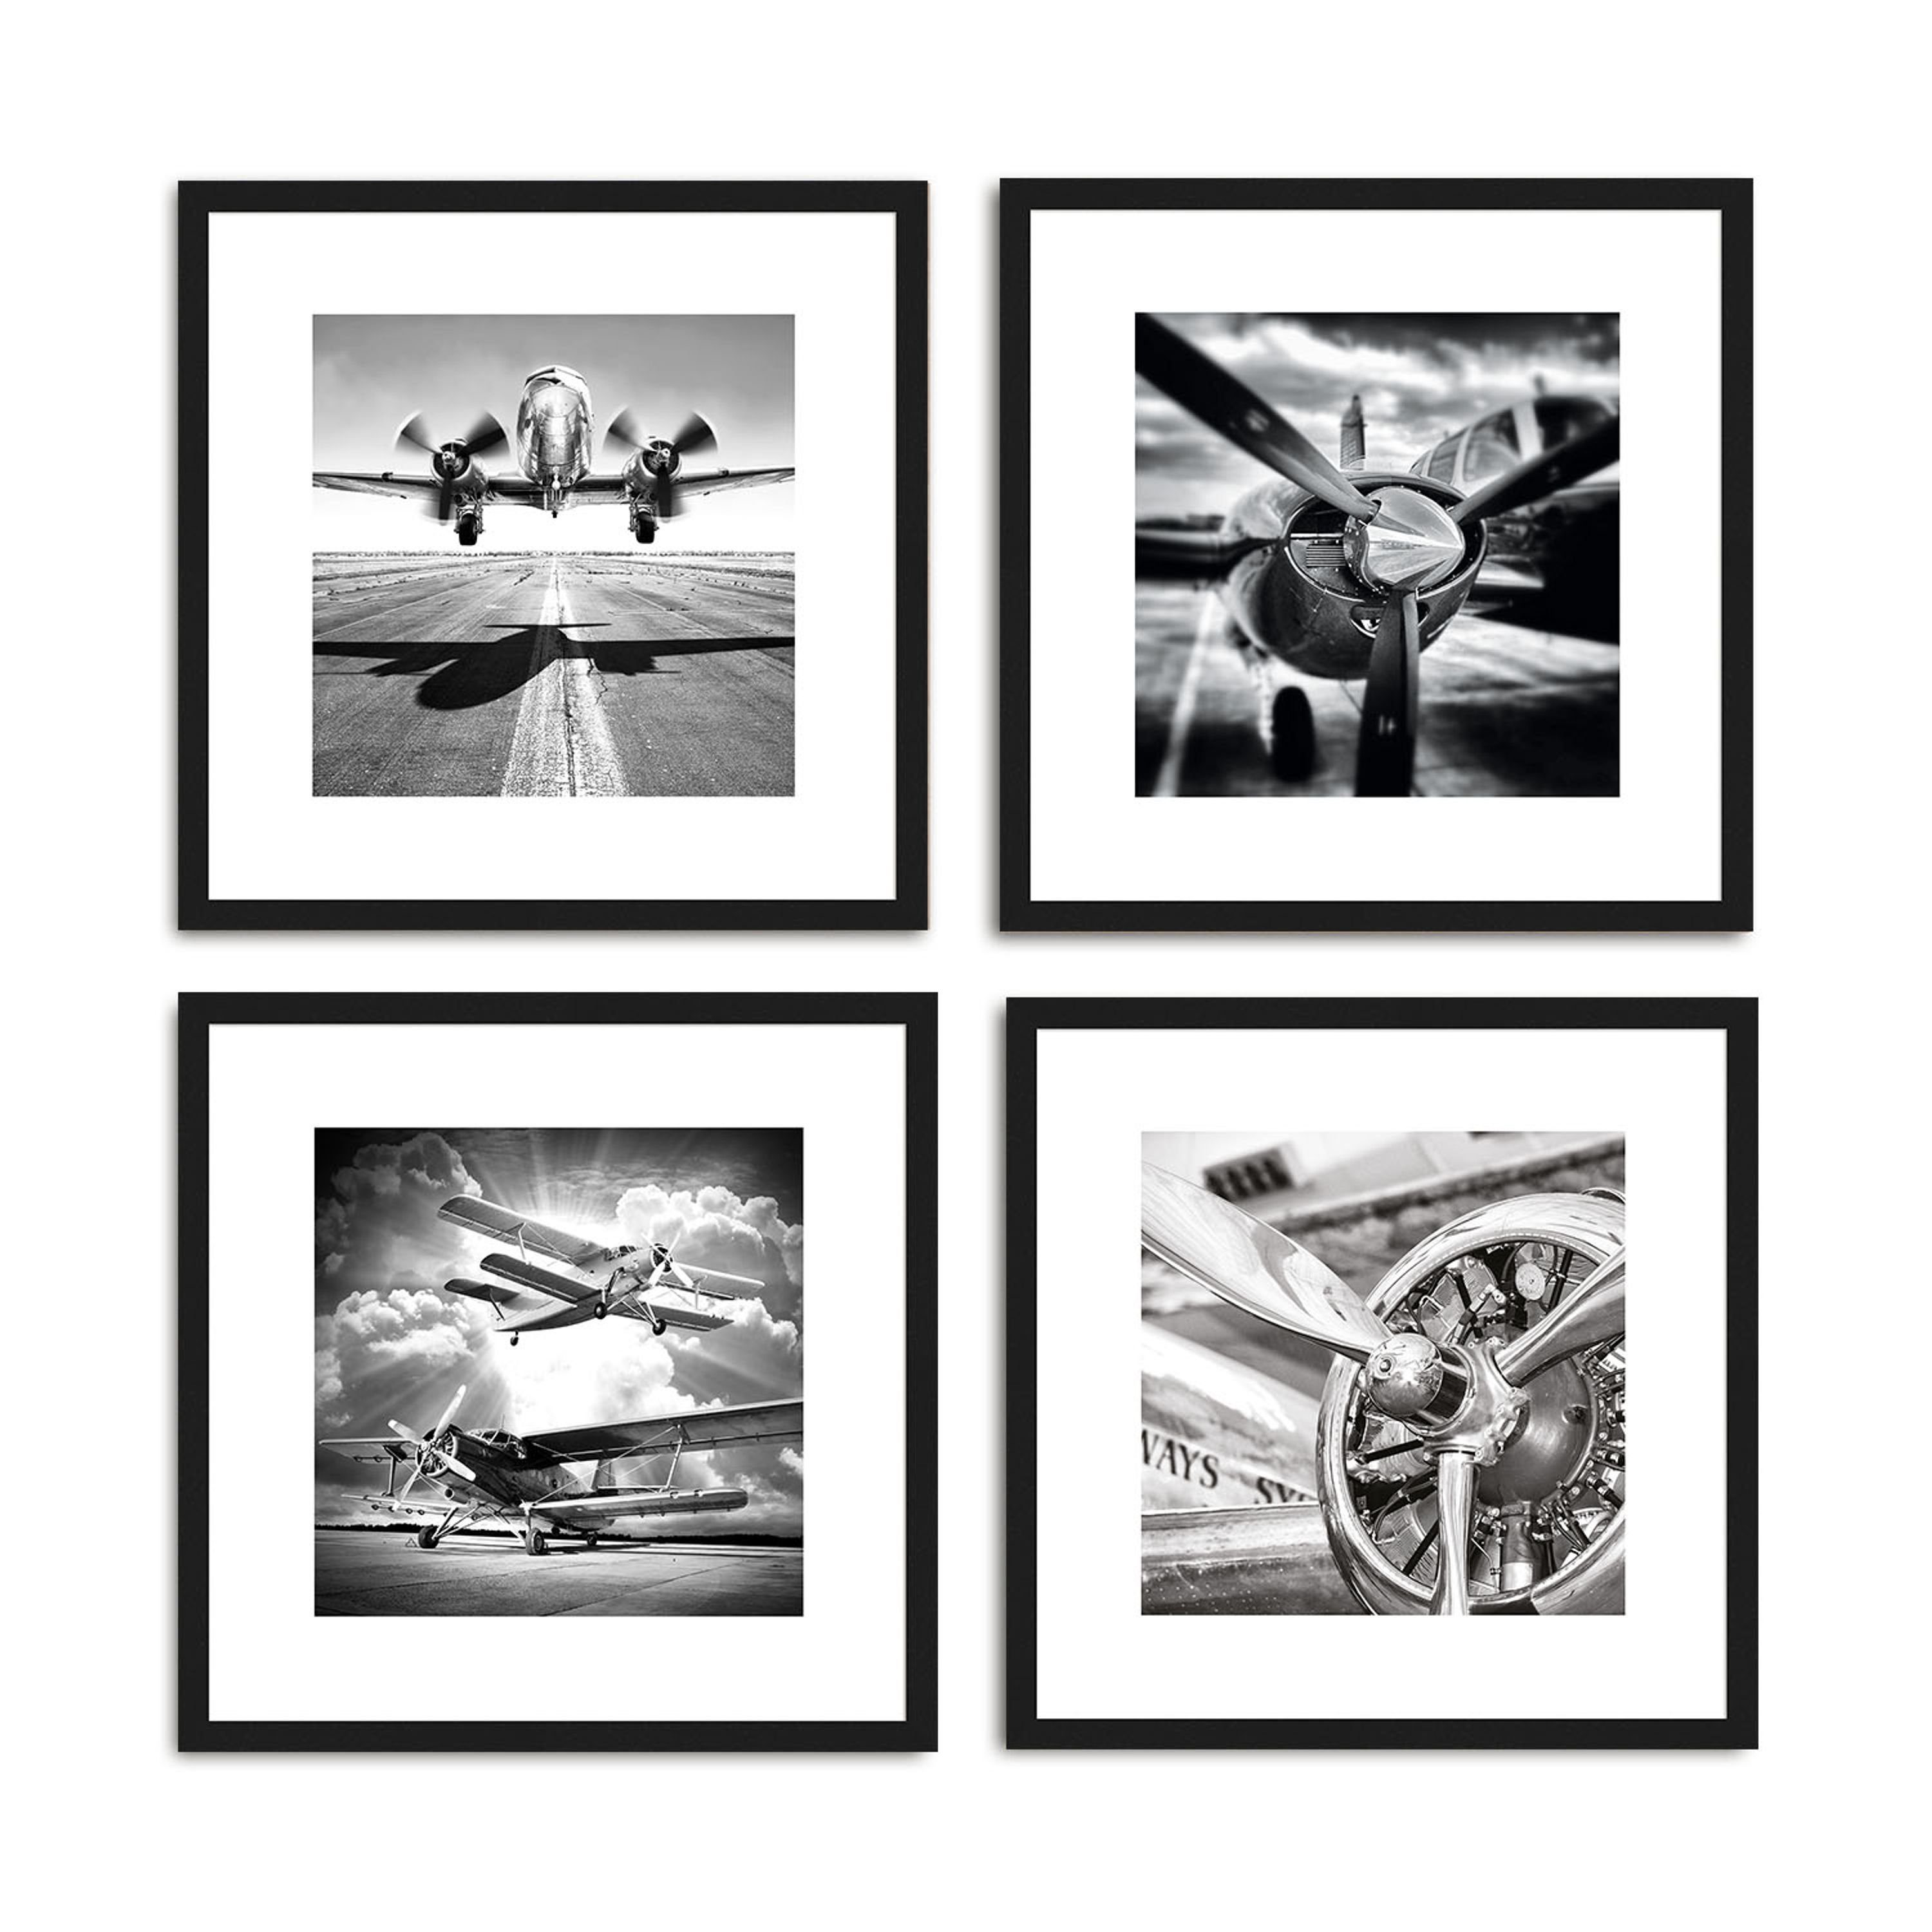 III Rahmen Design-Poster artissimo Bild mit inkl. Zeichnung: / Bild gerahmt Flugzeuge Wandbild, Schwarz-Weiß Holz-Rahmen / 30x30cm